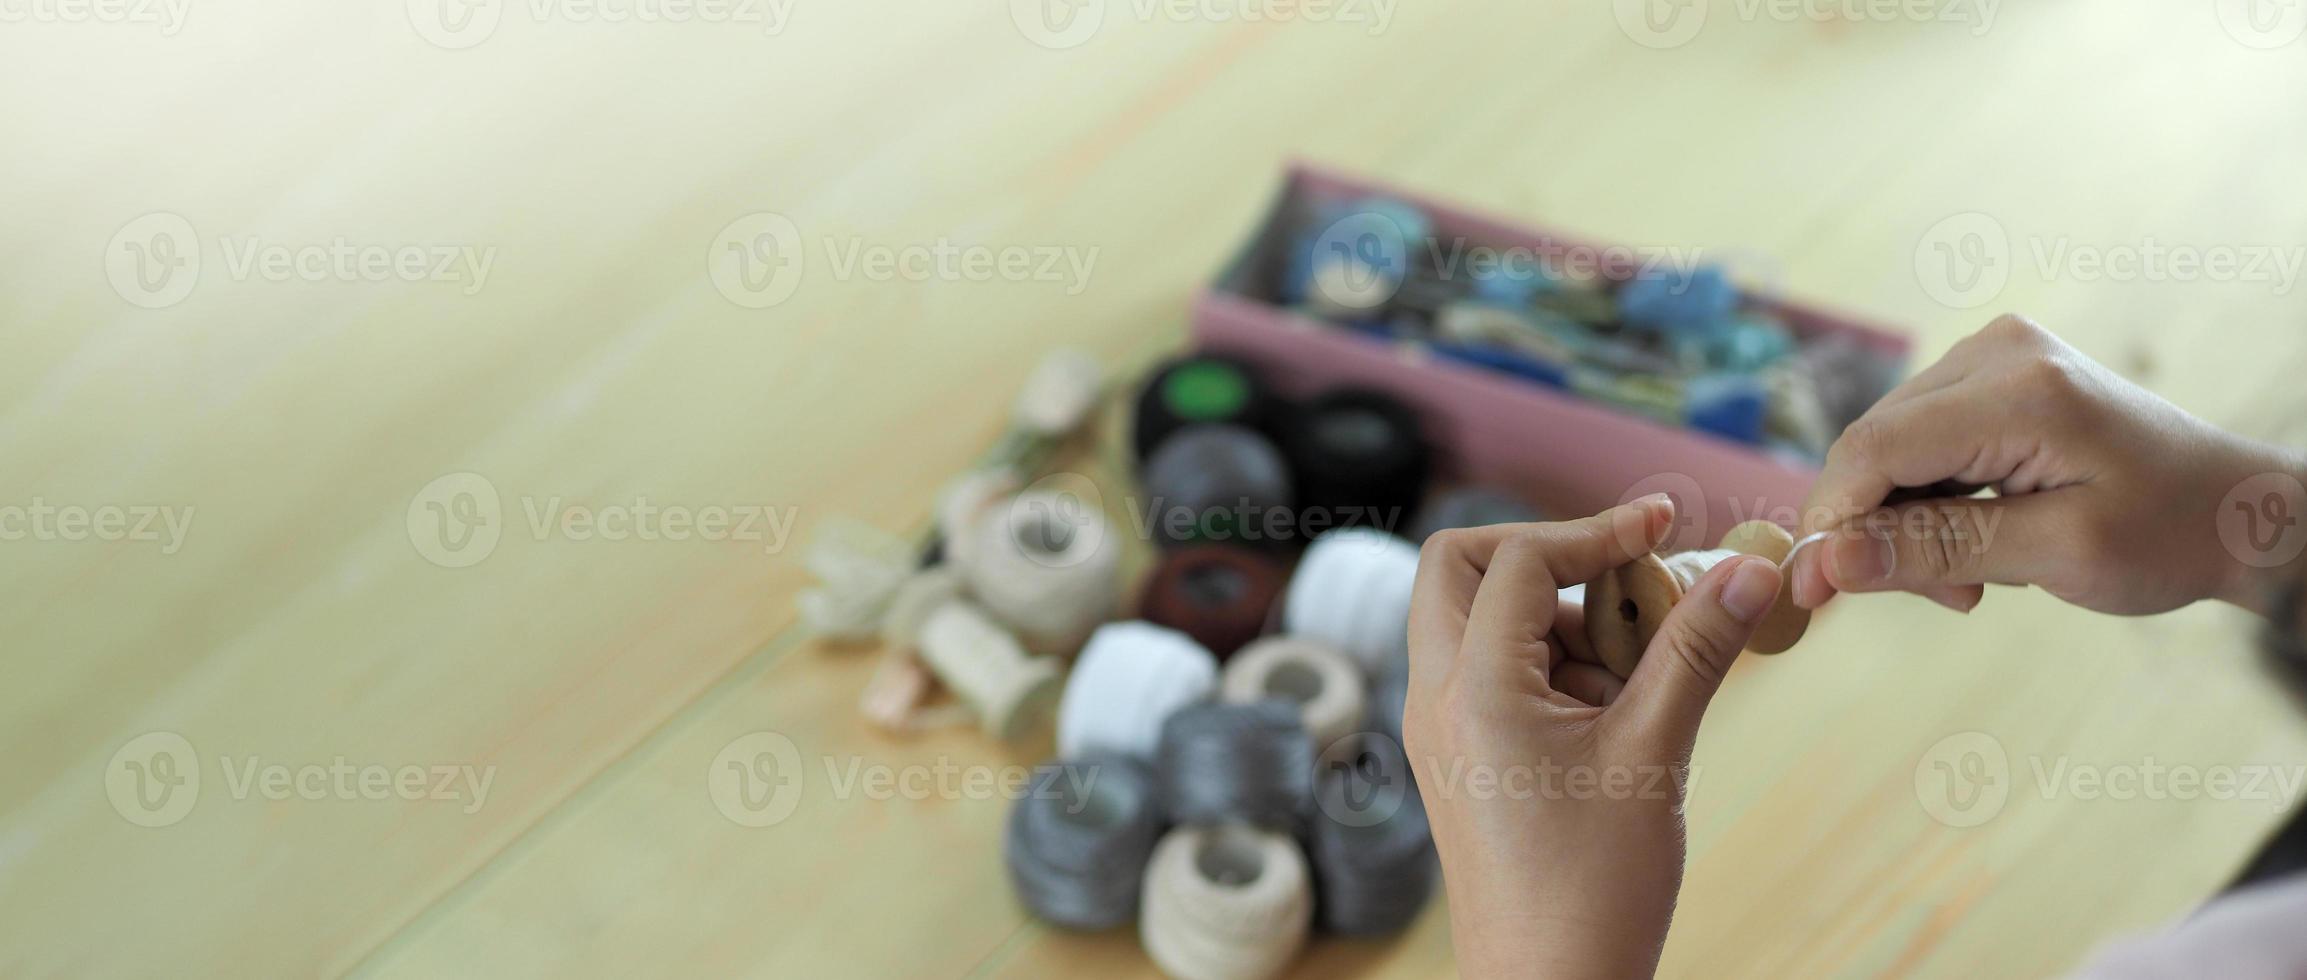 broder la couture à la main de la femme. travail artisanal et mains féminines. photo